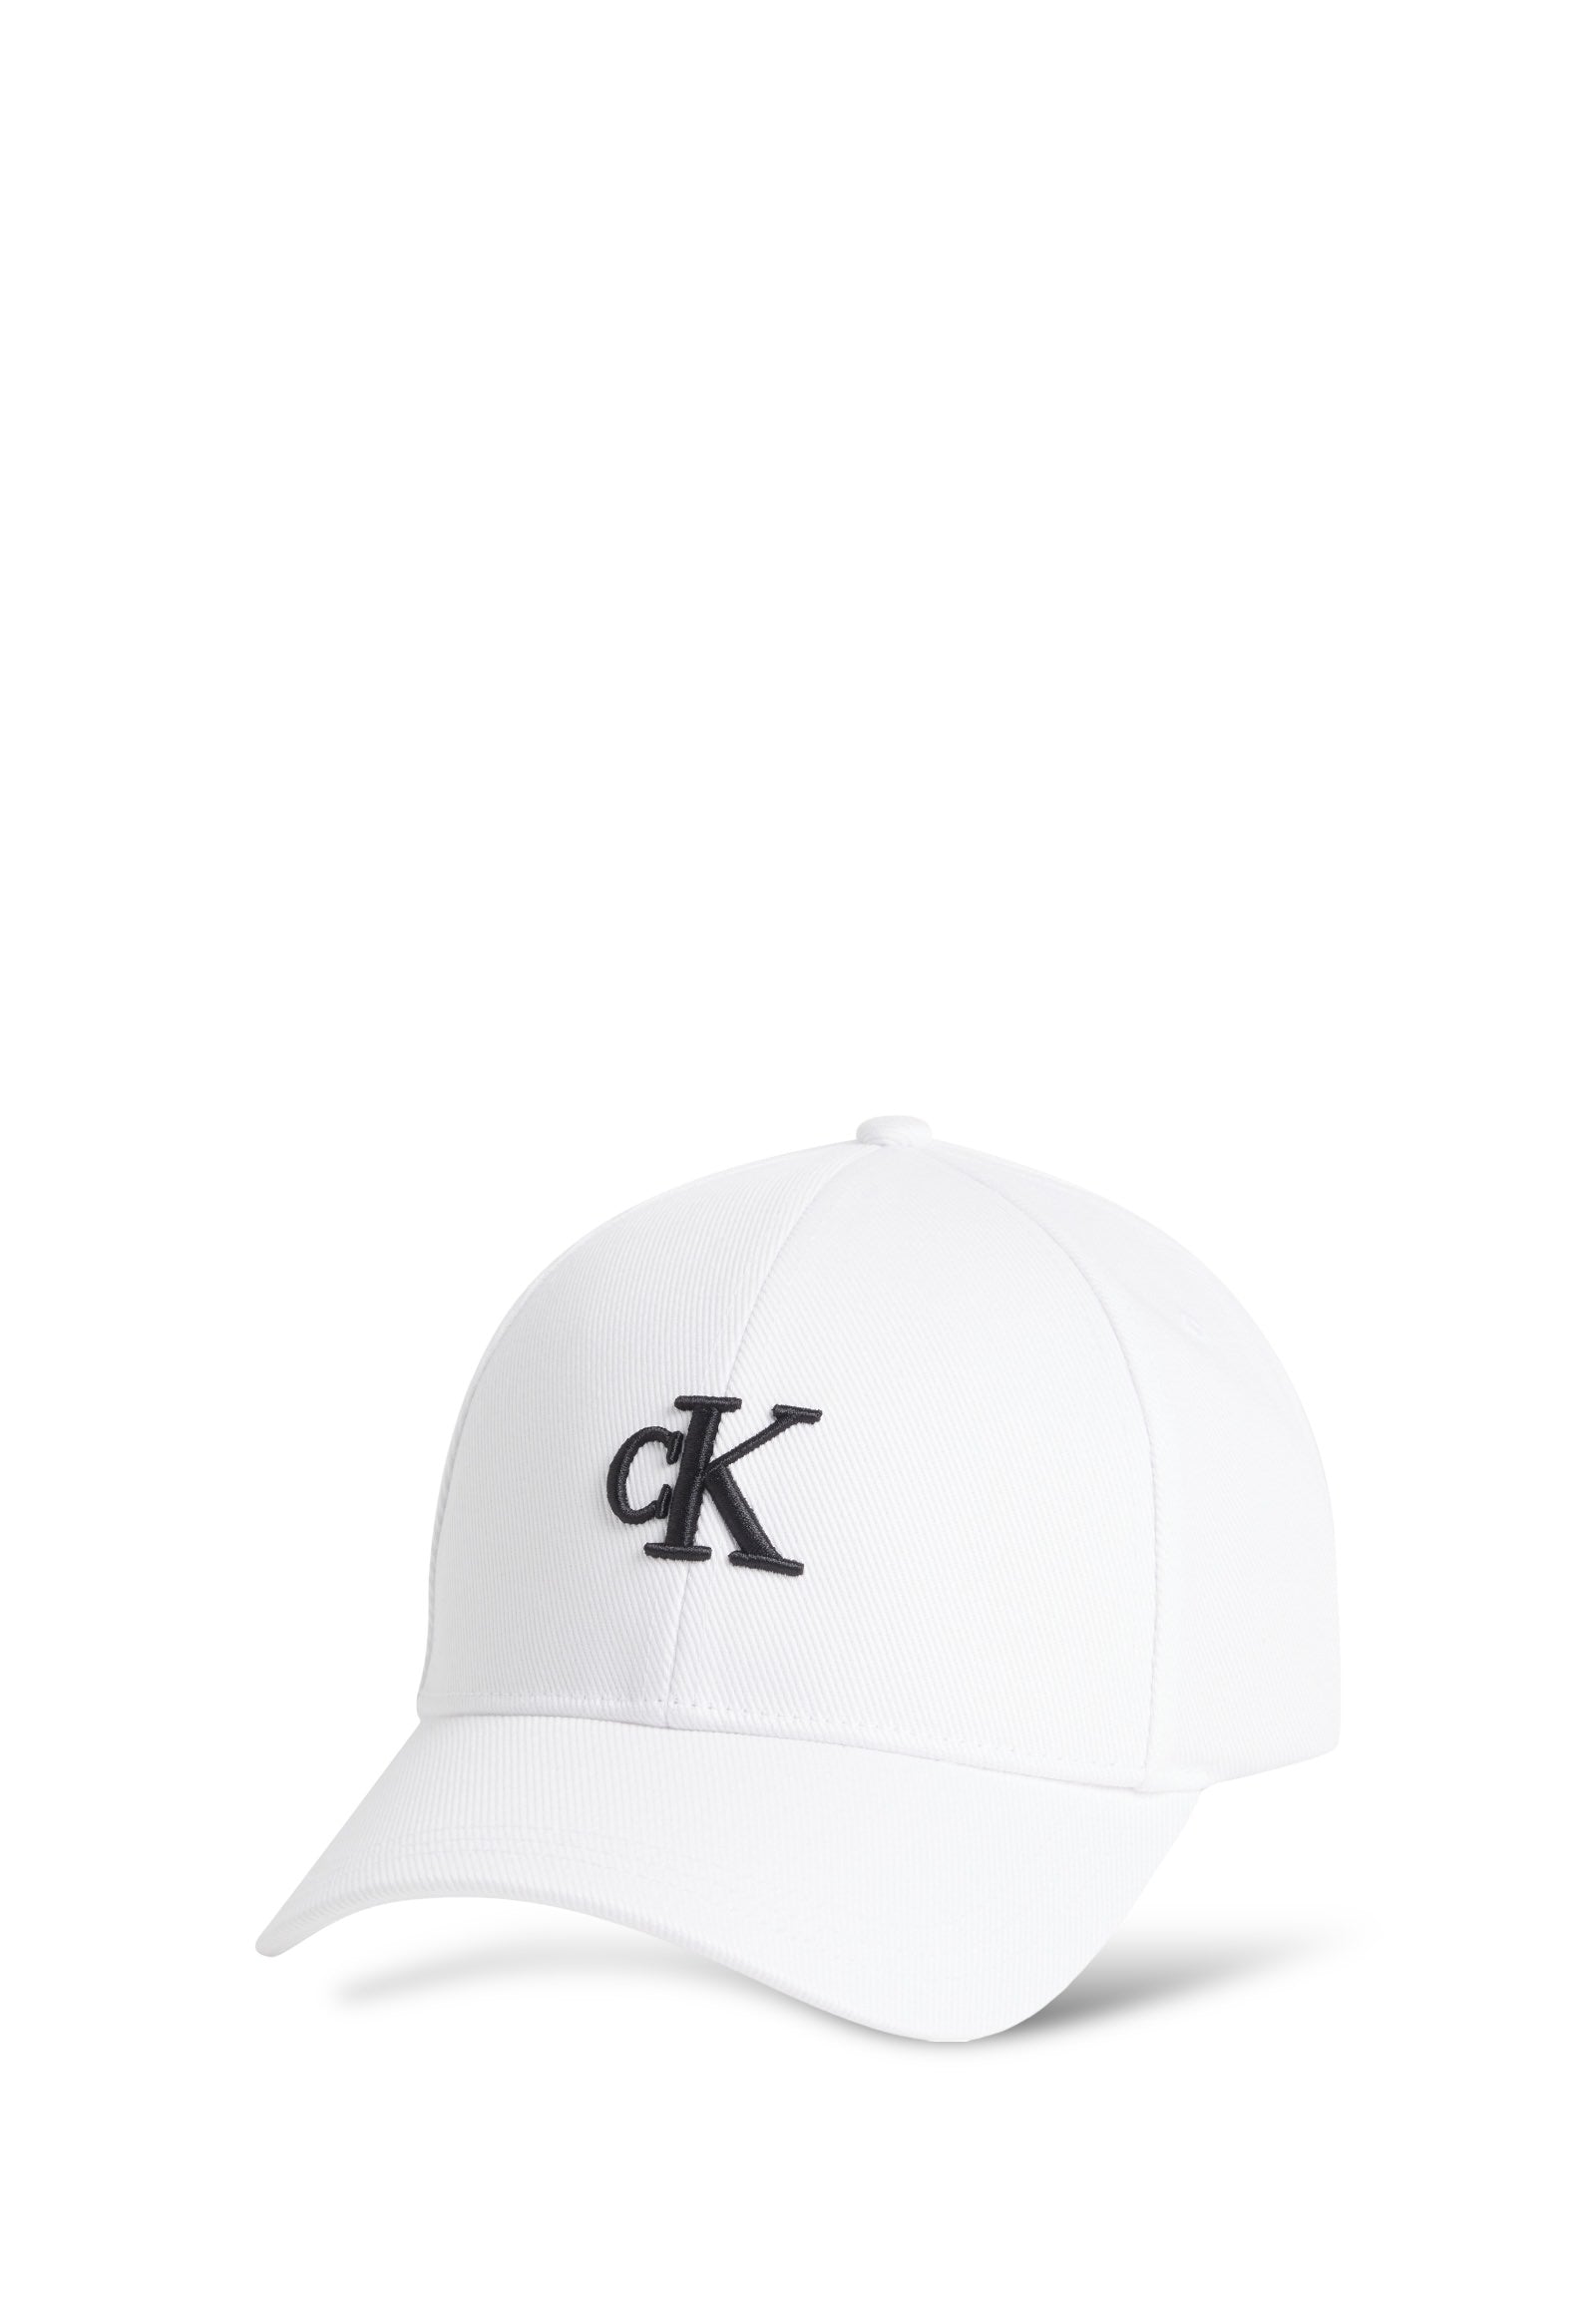 Baseball Hat K50k511805 White